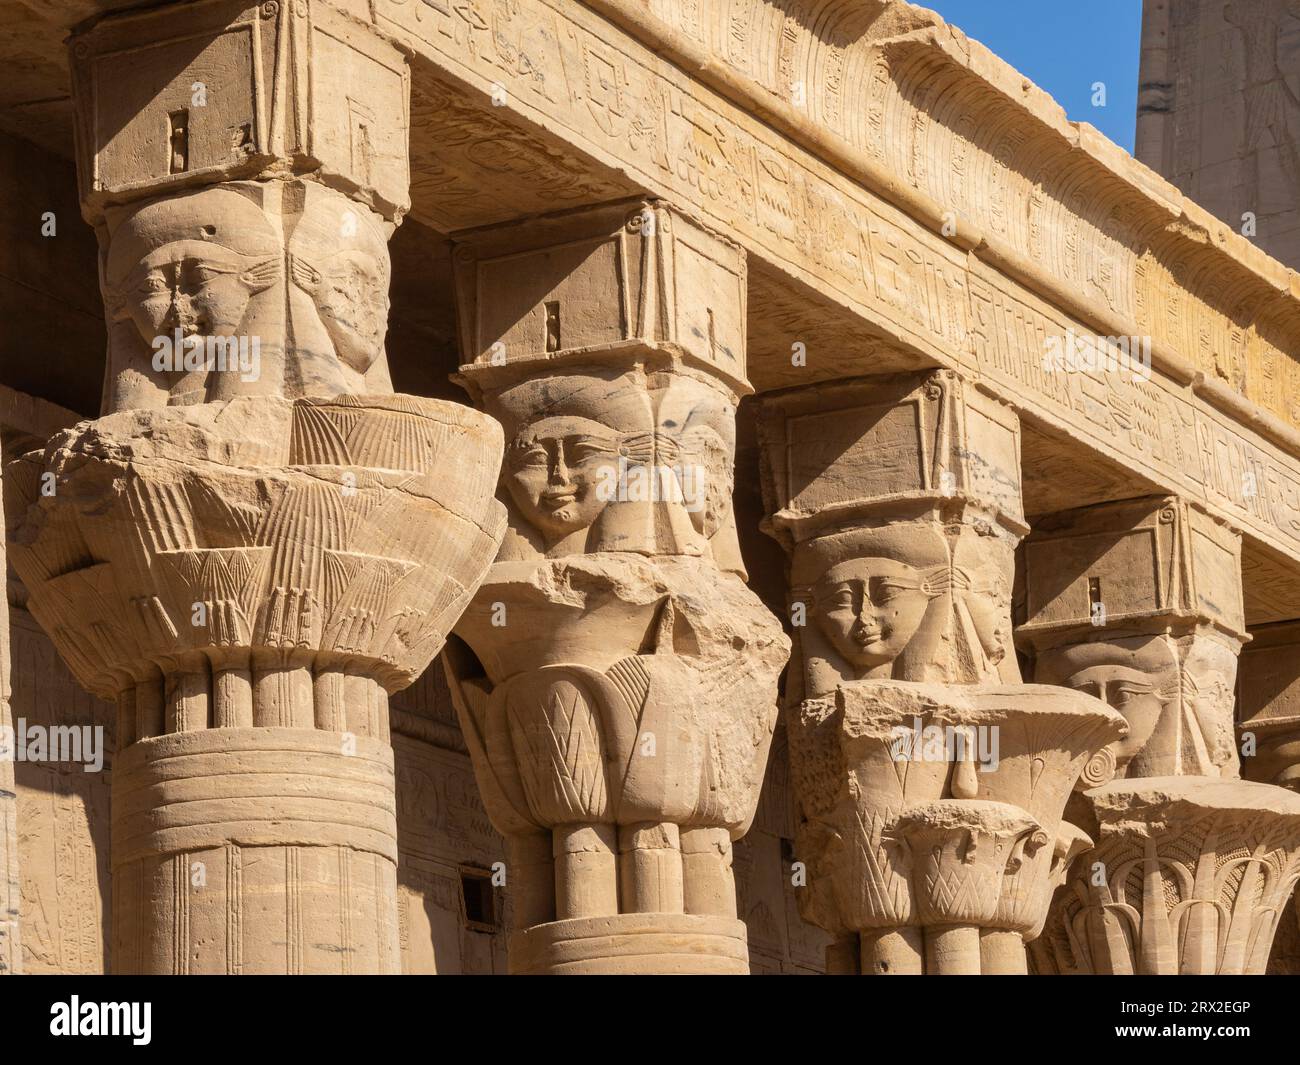 Colonnes du complexe du temple Philae, le temple d'Isis, actuellement sur l'île d'Agilkia, site du patrimoine mondial de l'UNESCO, Egypte, Afrique du Nord, Afrique Banque D'Images